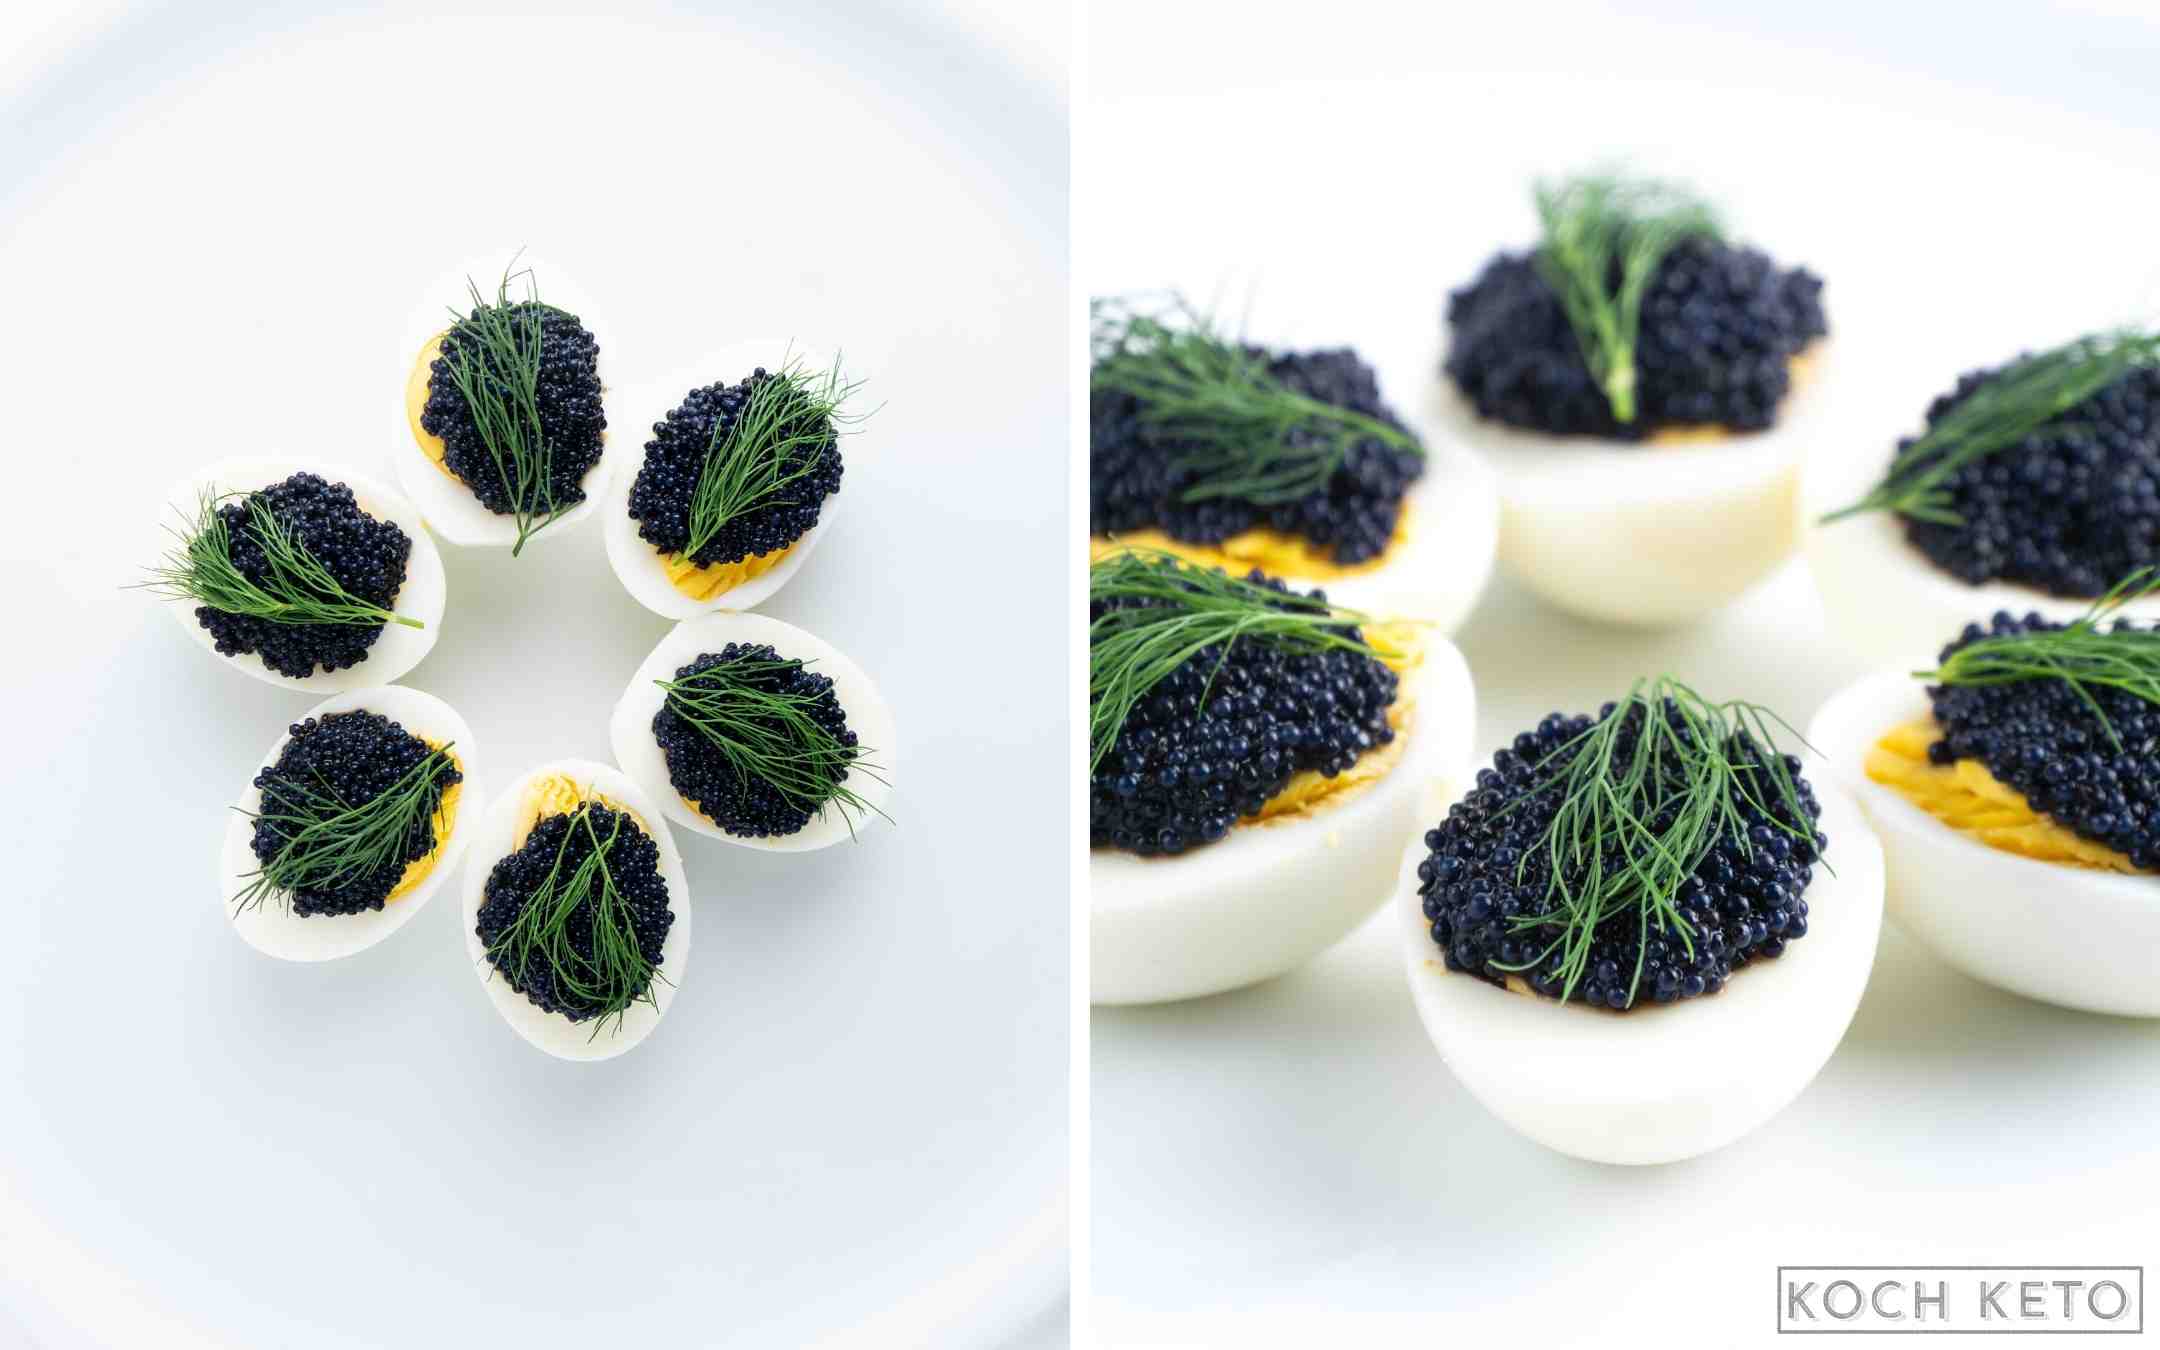 Eier mit Kaviar als schneller Keto Snack ohne Kohlenhydrate zum Abnehmen Desktop Featured Image